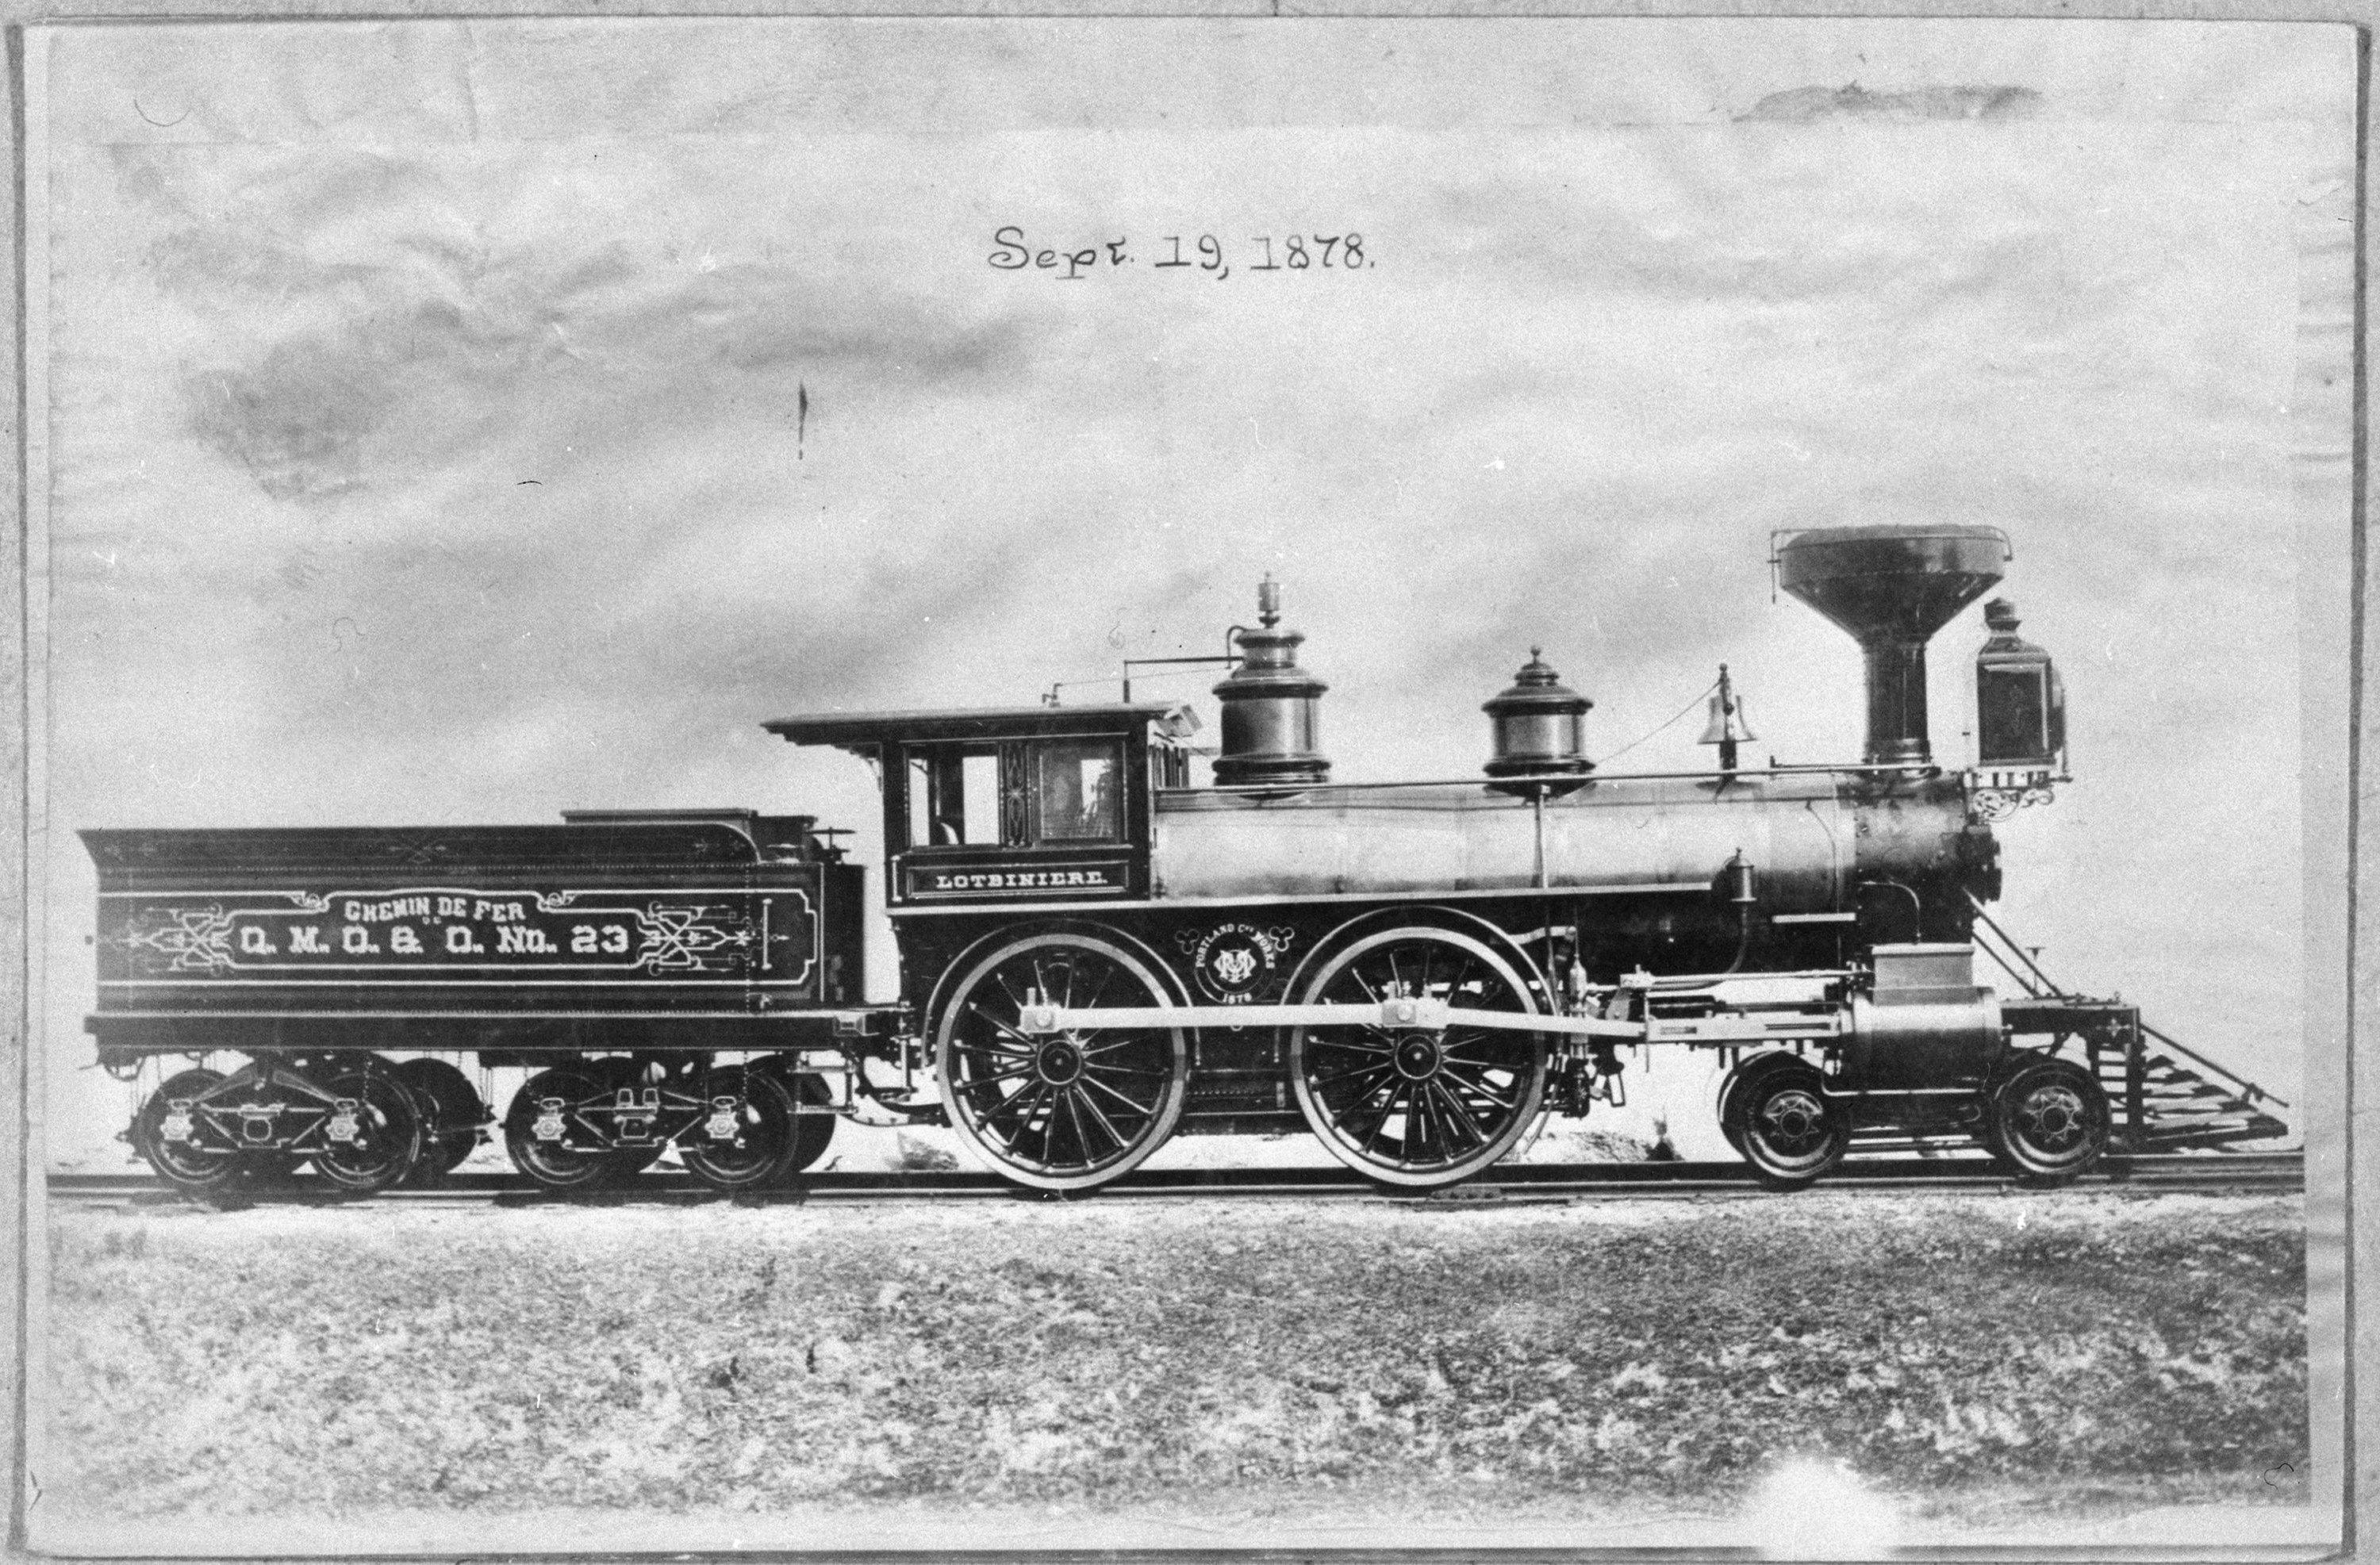 Photographie noir et blanc d’une locomotive à vapeur. La locomotive est sur les rails d’une voie ferrée. Sur la photographie, au-dessus de la locomotive, on a inscrit Sept. 19, 1878. Un petit wagon de marchandises est attaché derrière la locomotive.